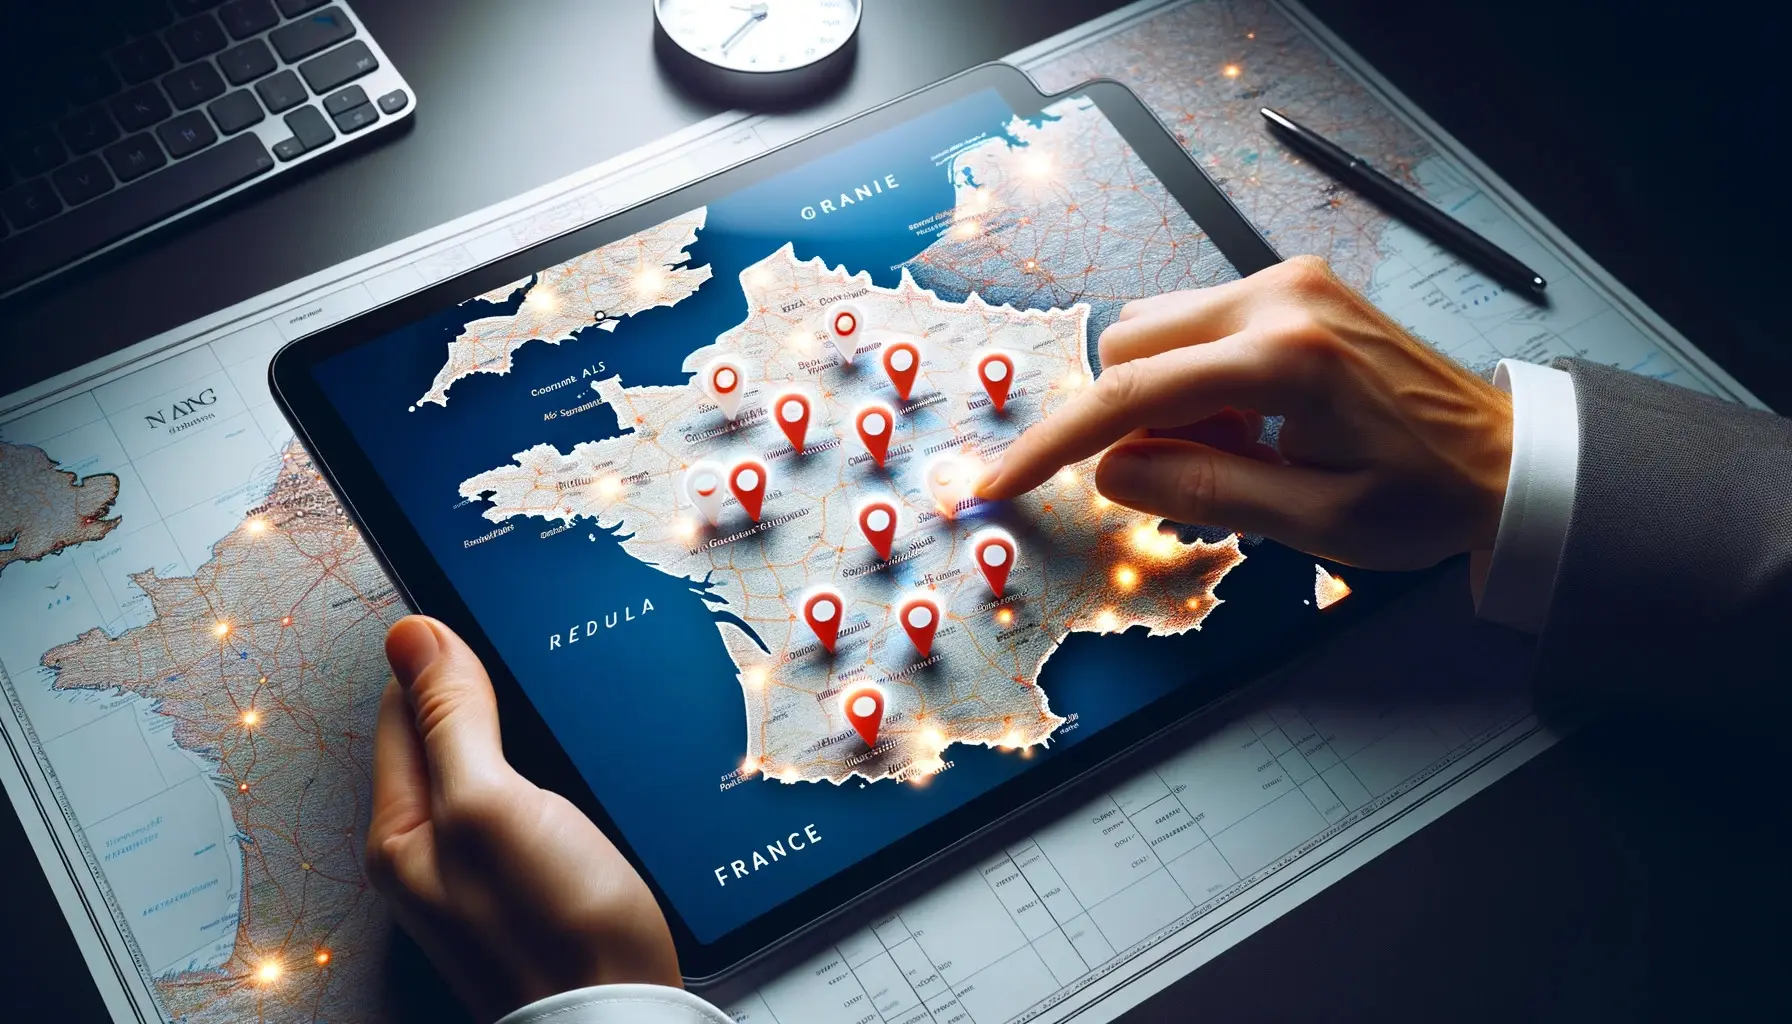 Agence Experte Google My Business DALL·E 2023 10 20 08.43.22 Photo 4k dune carte de la France avec des epingles lumineuses indiquant des entreprises optimisees pour le referencement local. Au premier plan une